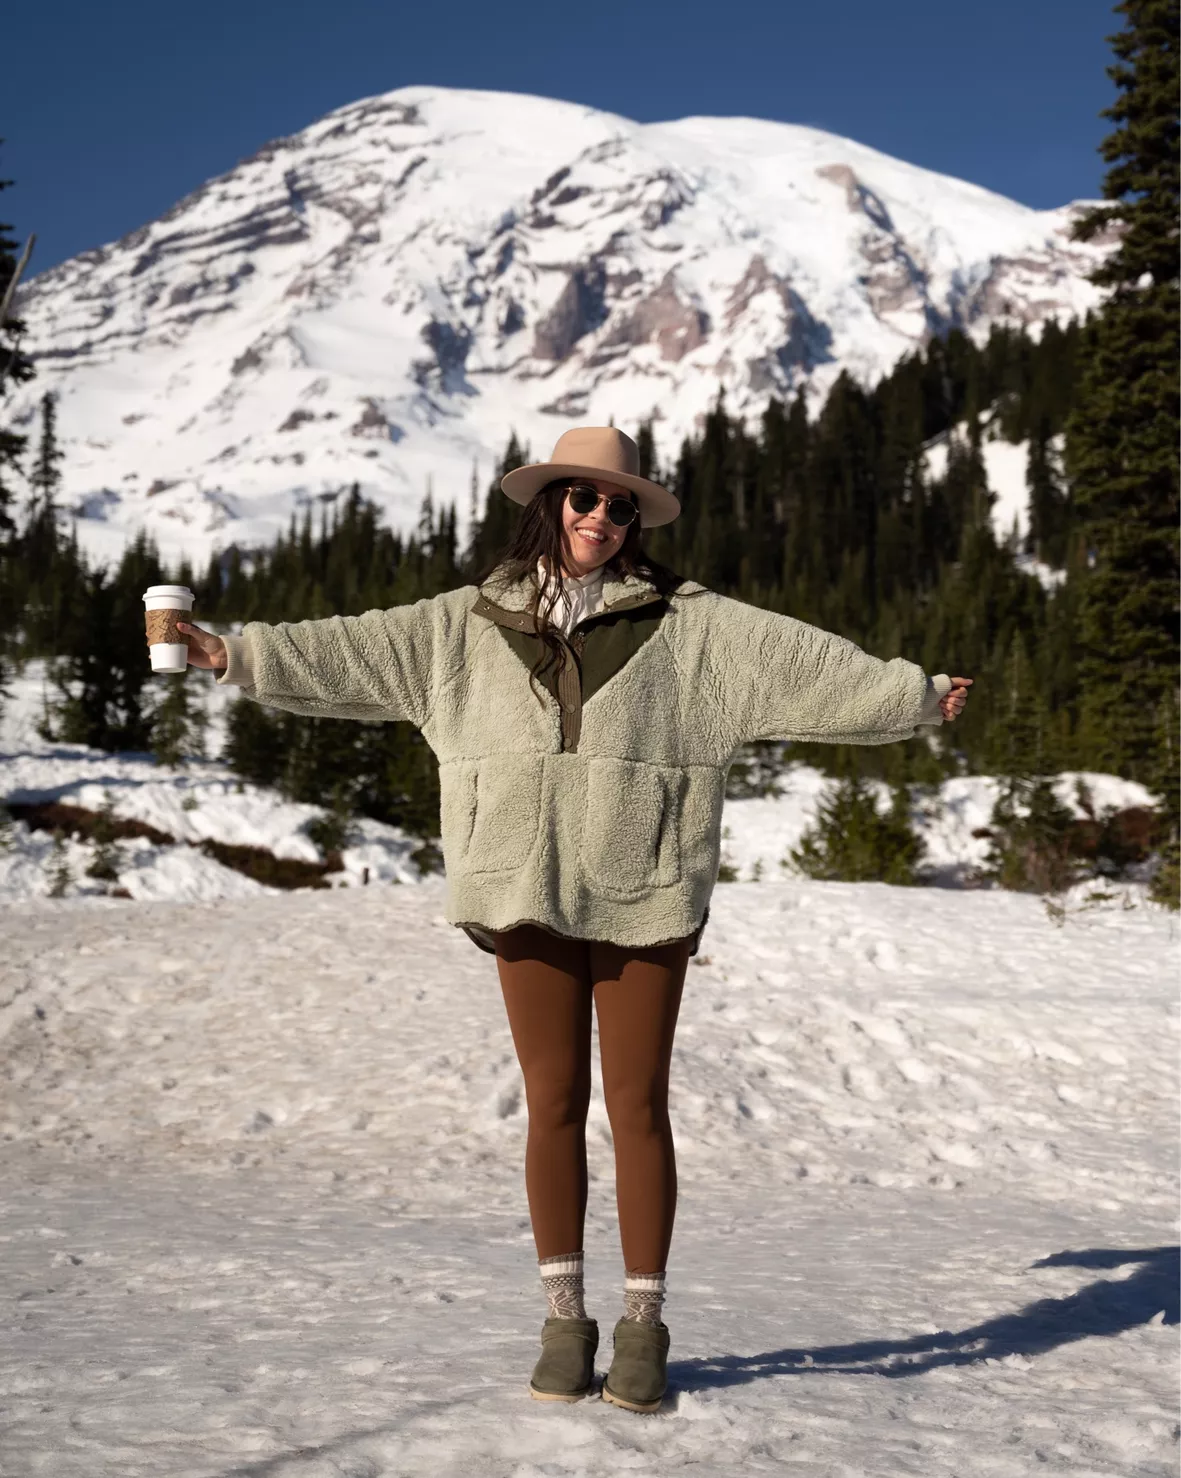 ULT-Hike Women's Winter Leggings